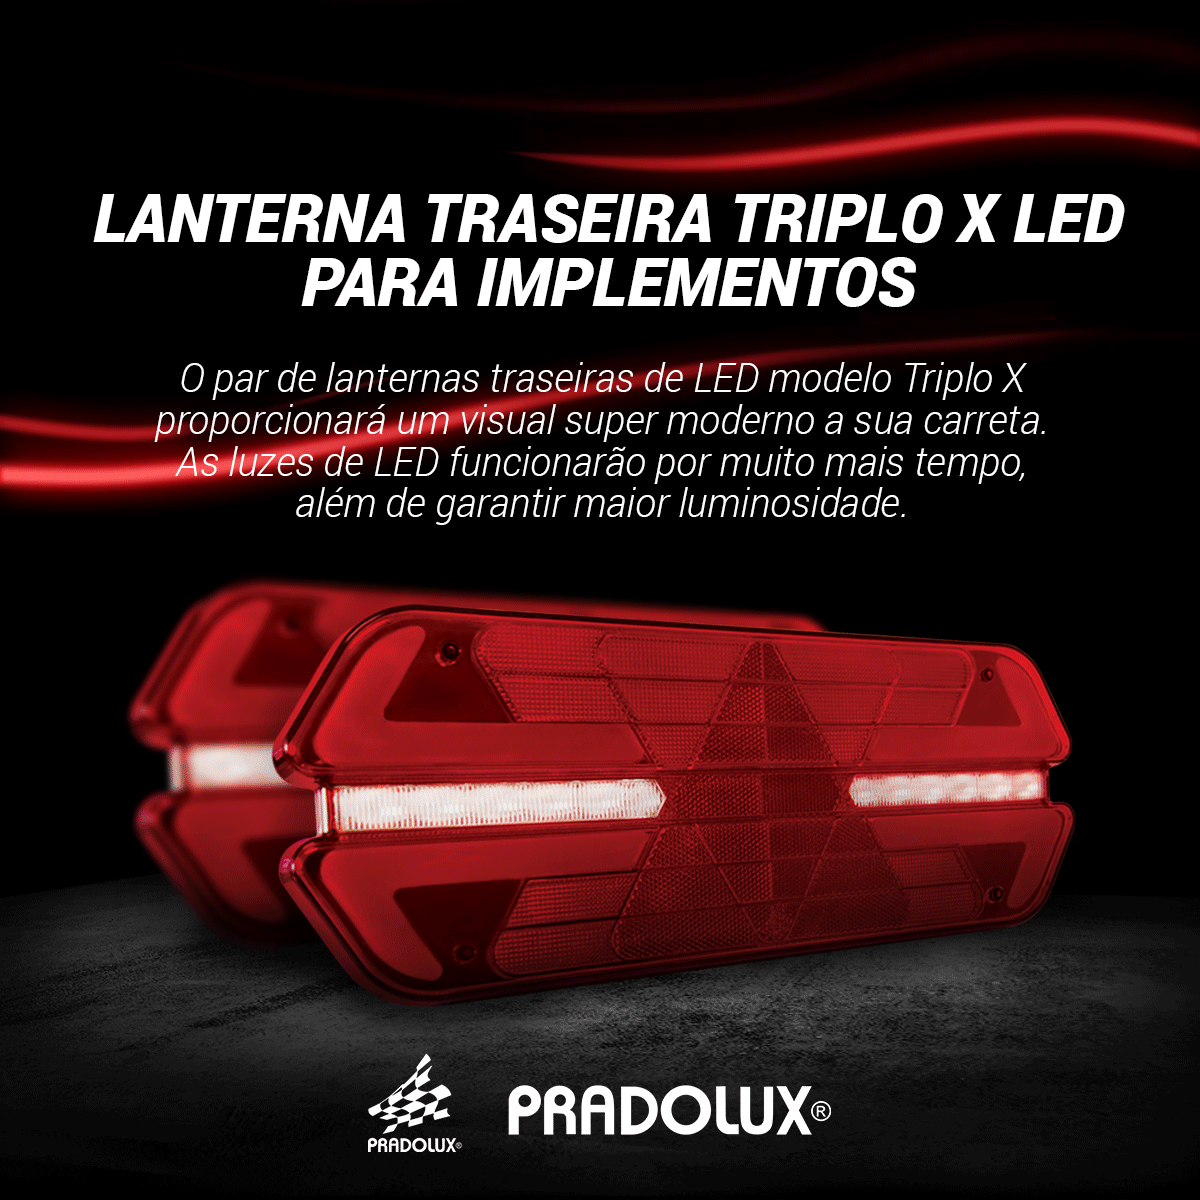 PL1452 – Lanterna traseira Triplo X LED